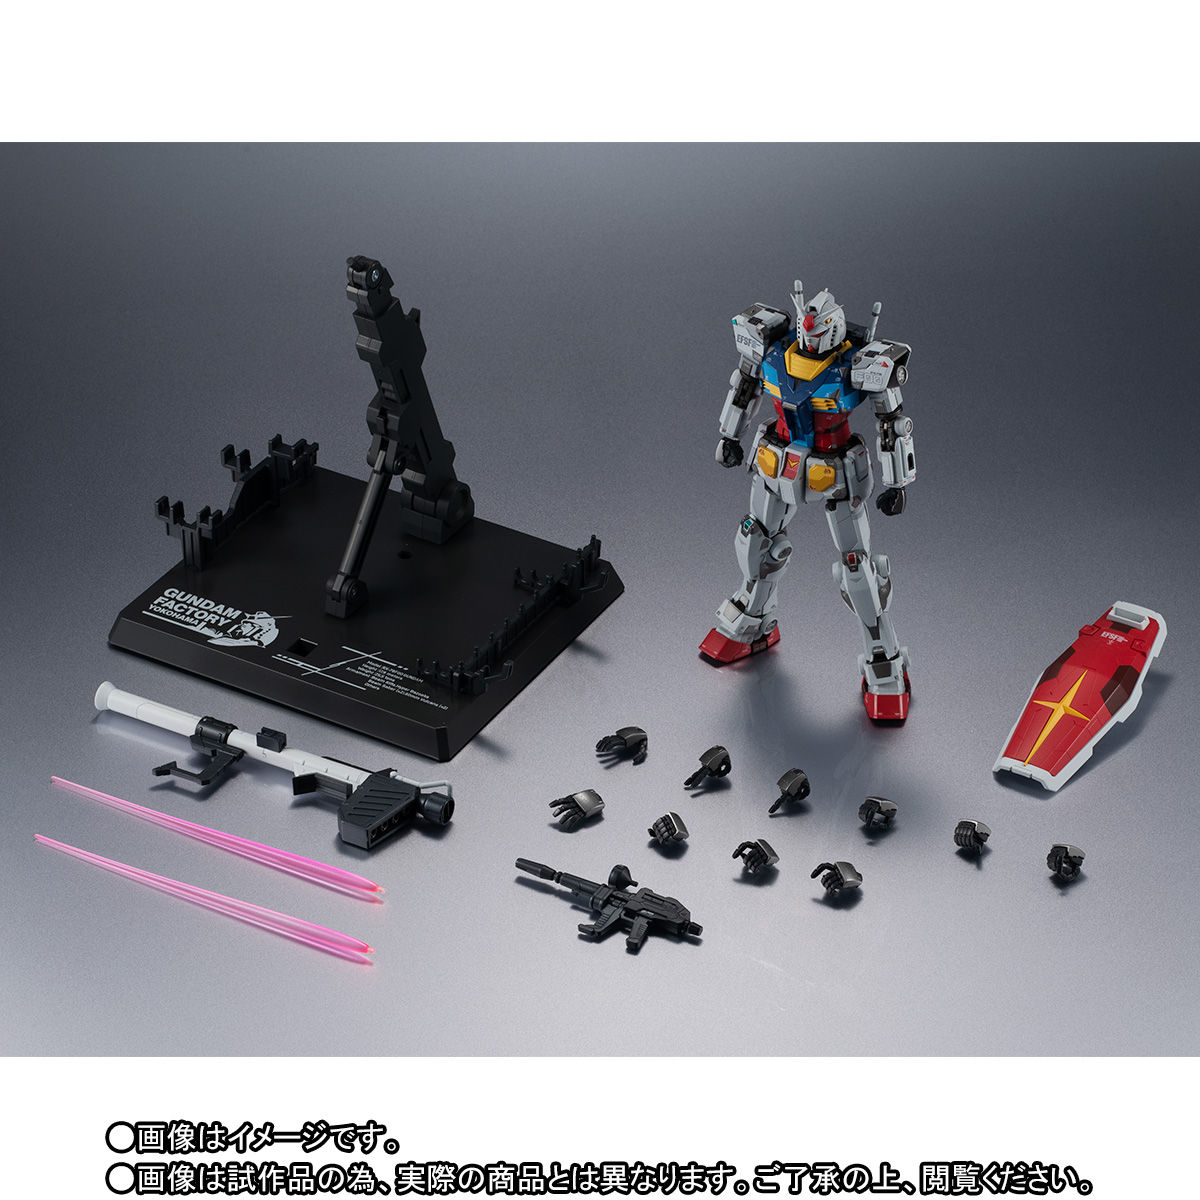 Chogokin RX-78F00 Gundam